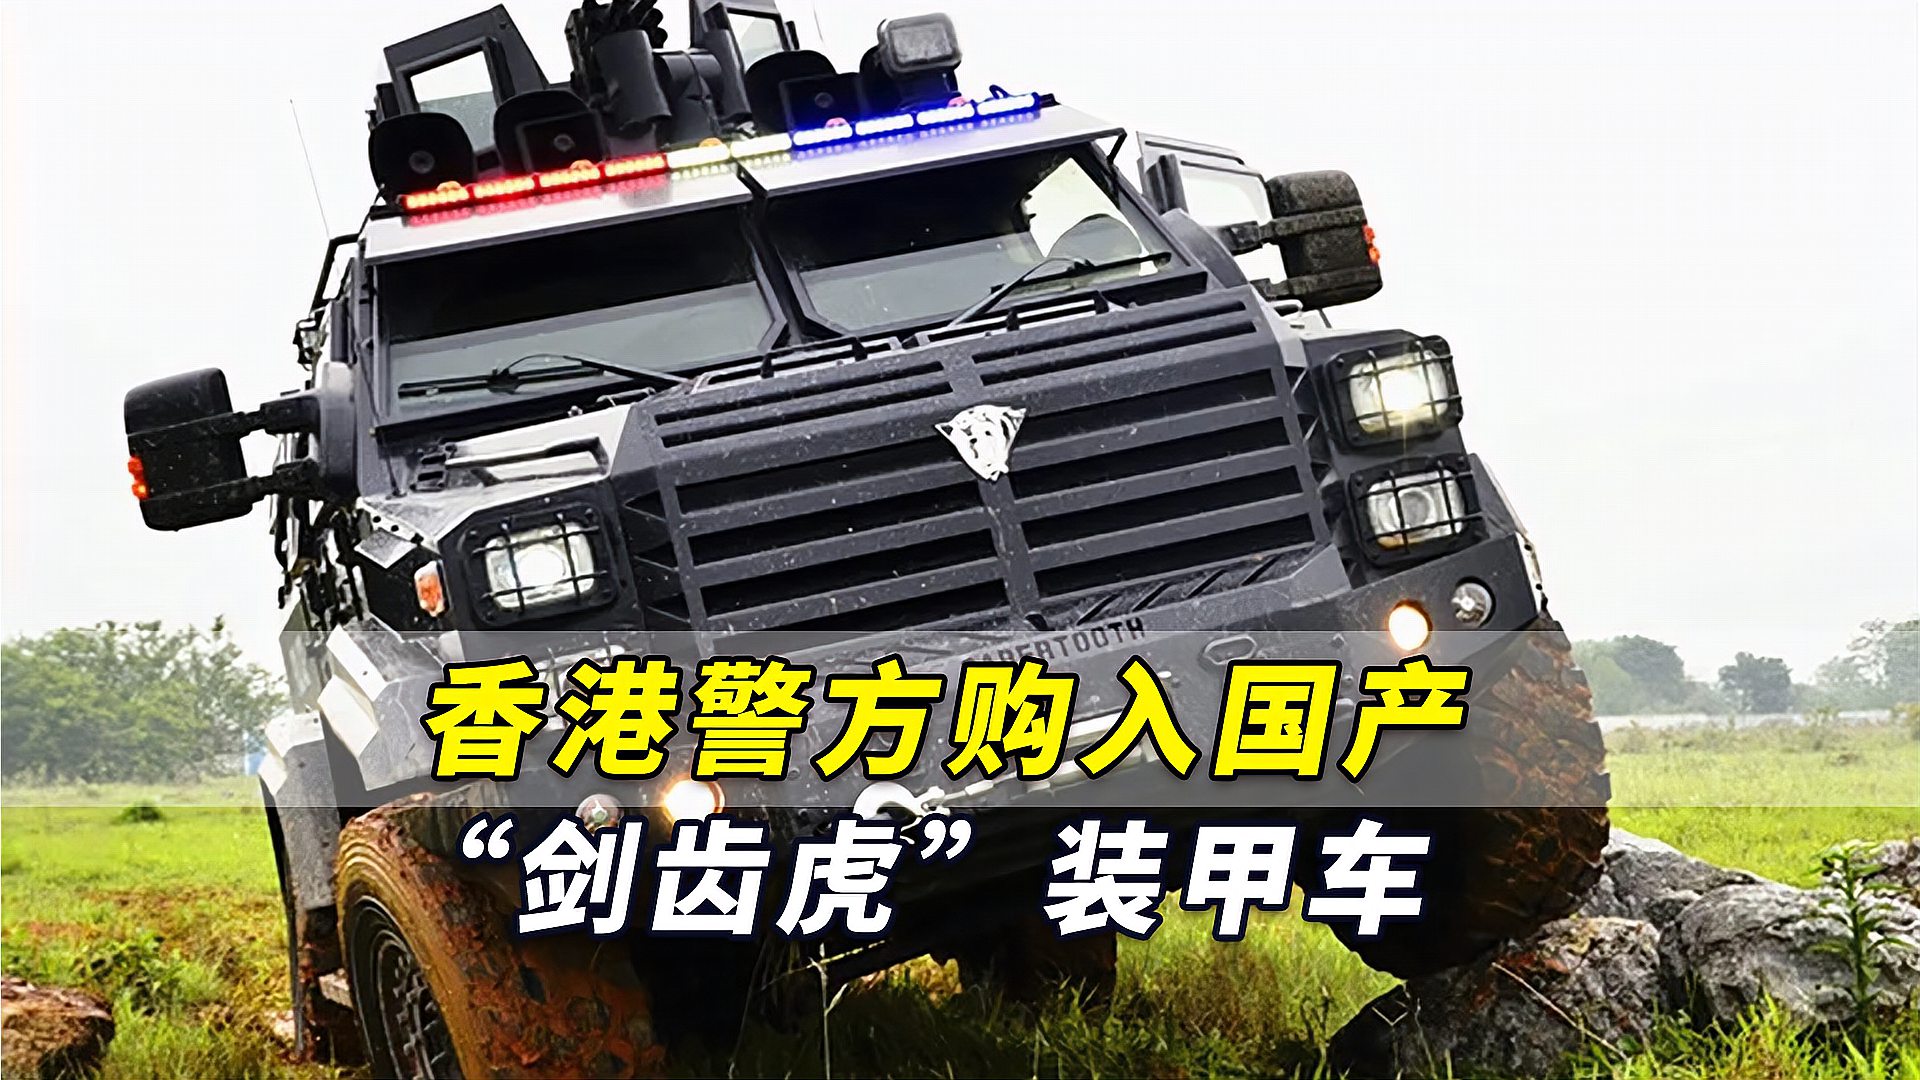 港媒香港警方购入国产剑齿虎装甲车全车能抵抗子弹攻击